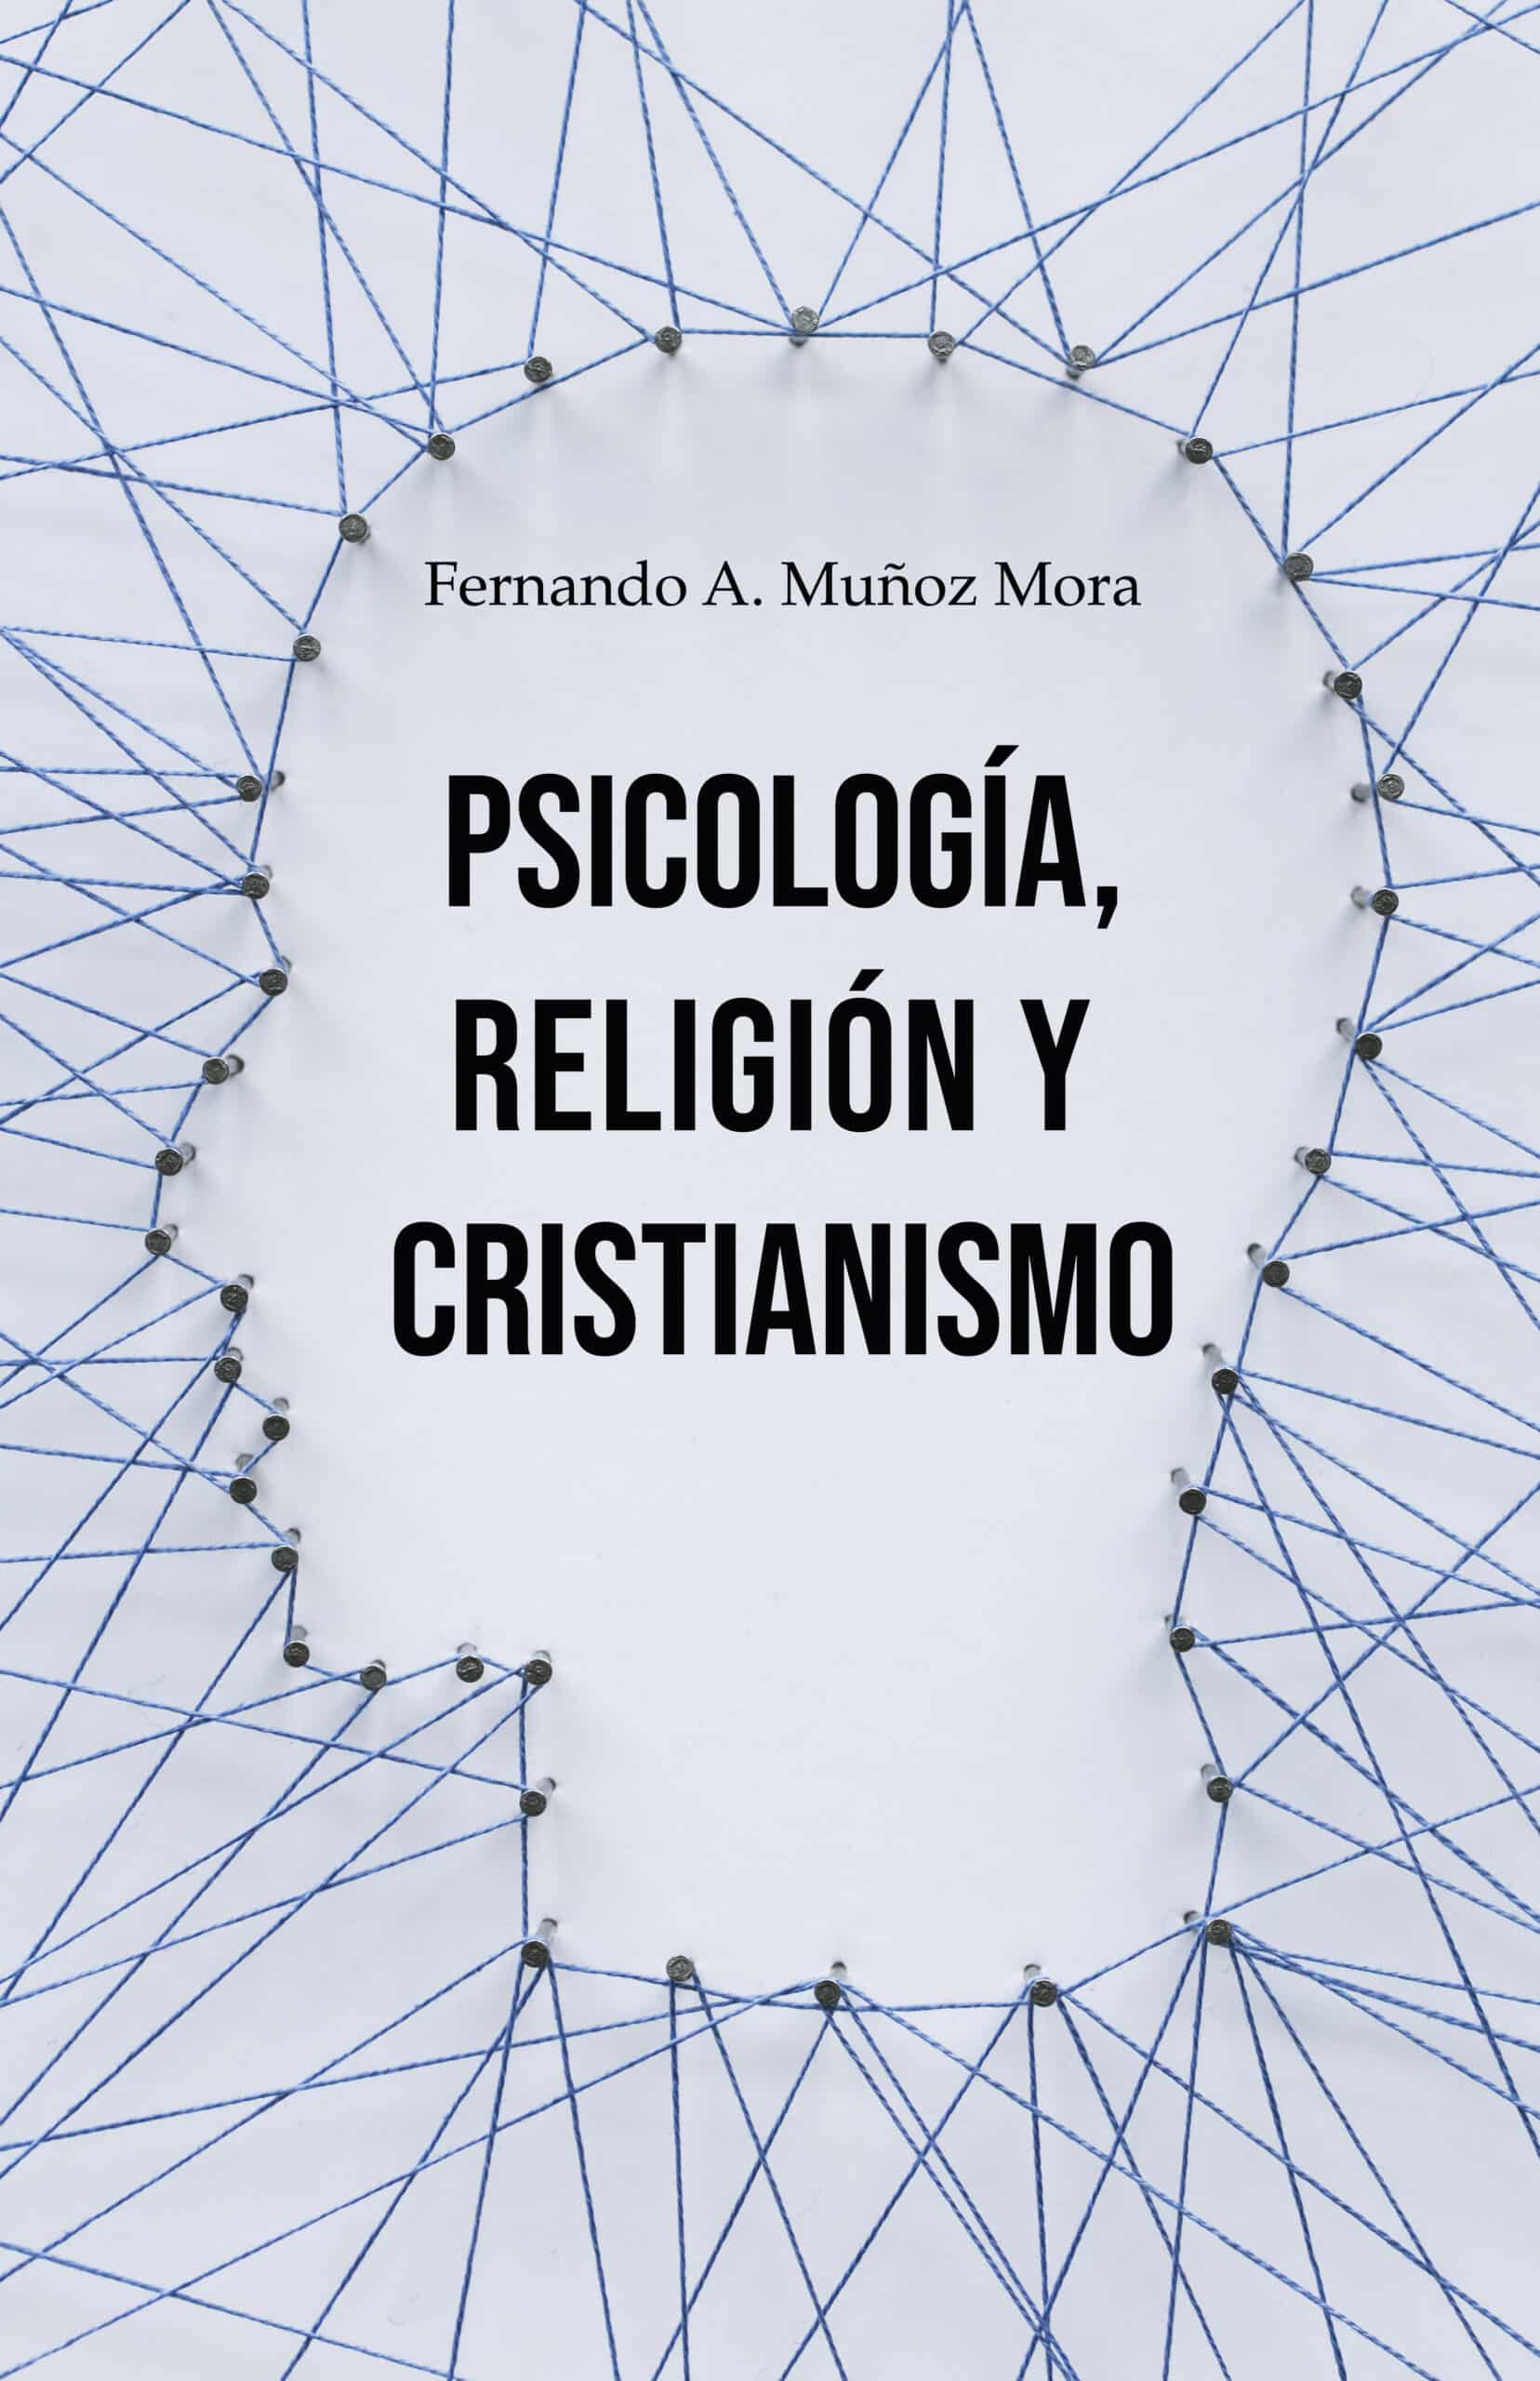 Psicología, religión y cristianismo, de Fernando A. Muñoz Mora